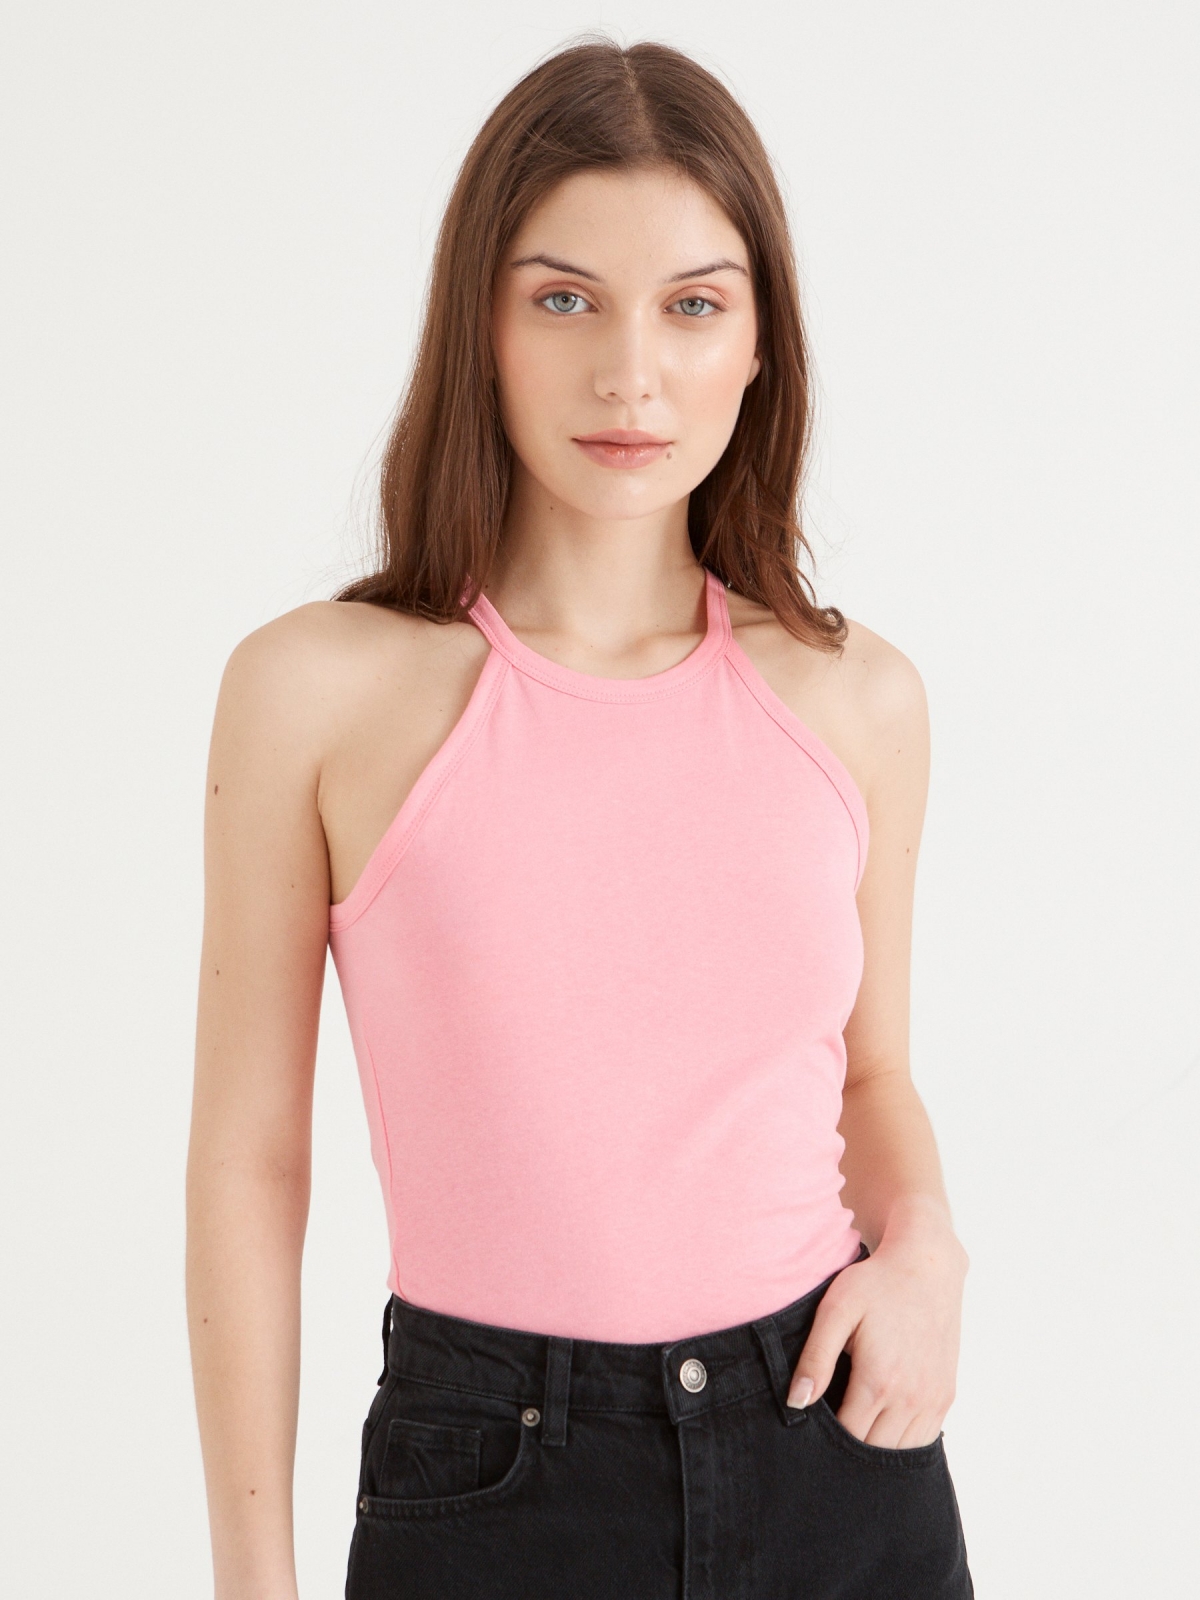 Camiseta básica cuello halter rosa claro vista media frontal